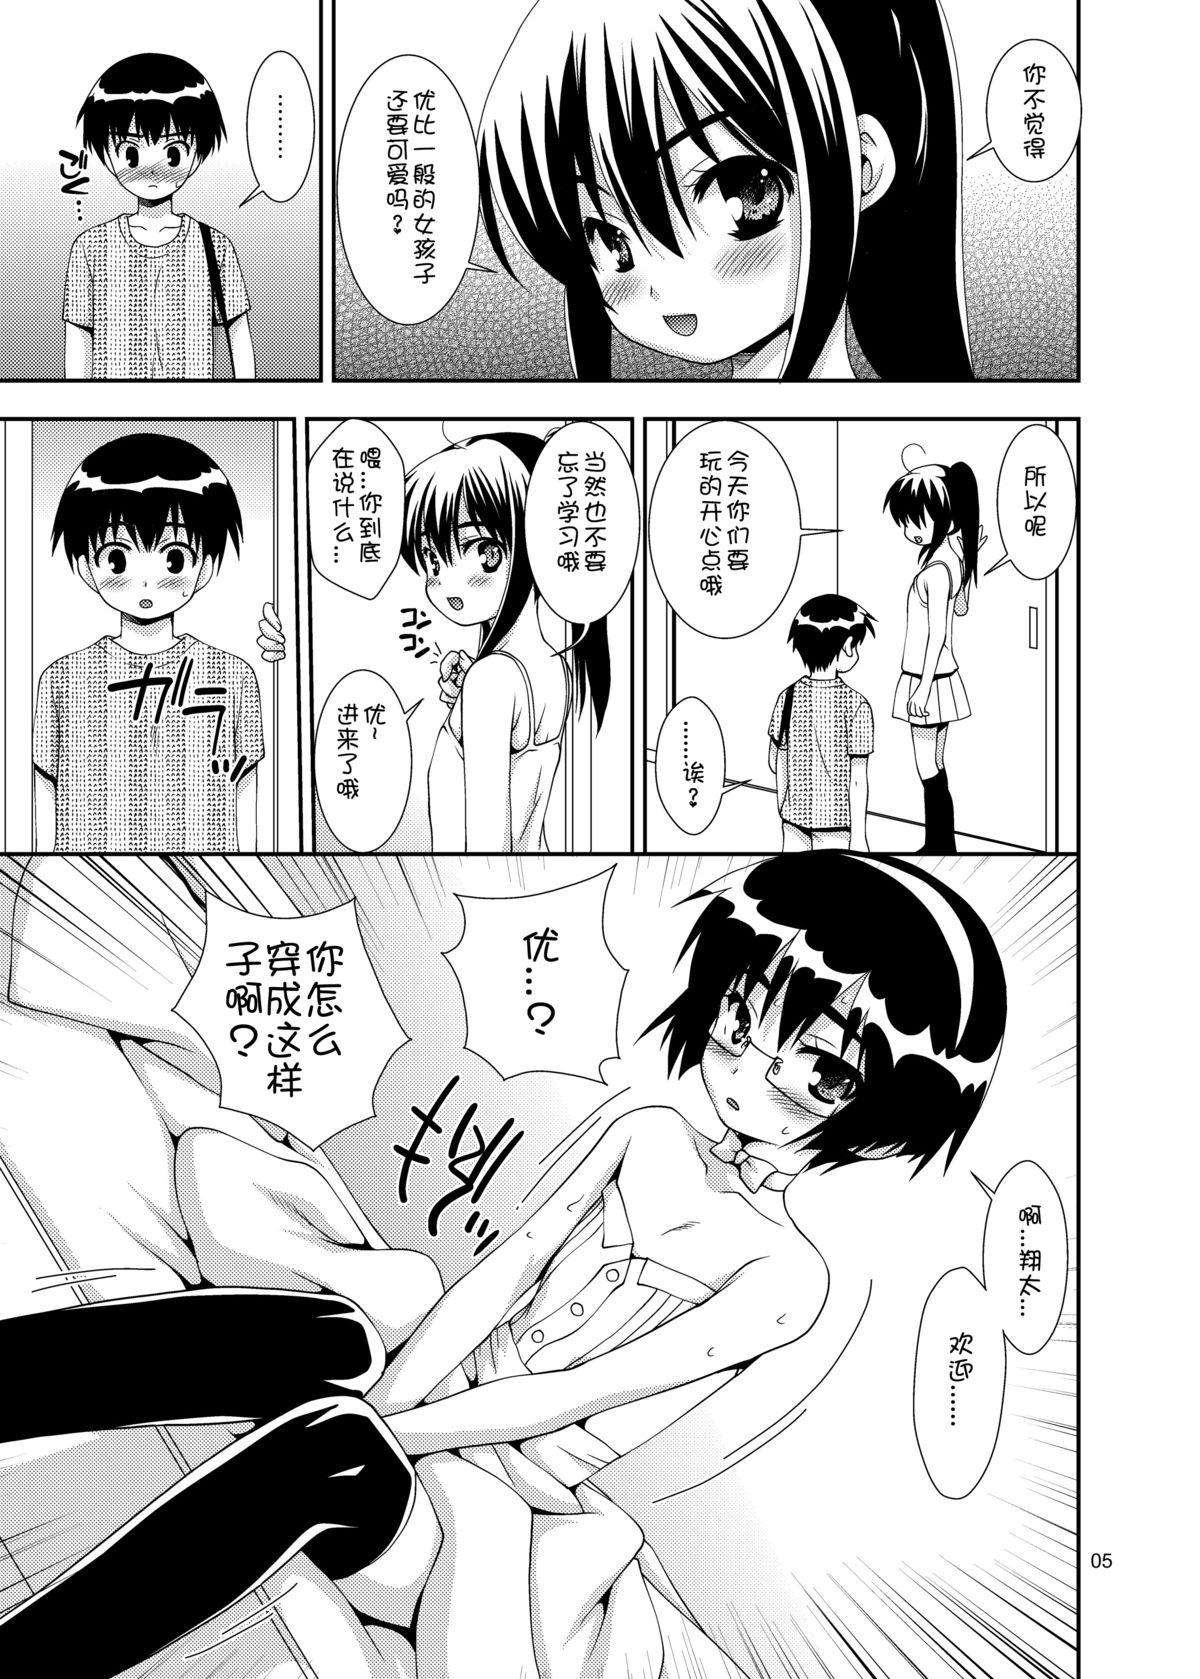 Tanned Osananajimi "Otokonoko-ka" Keikaku White Girl - Page 4